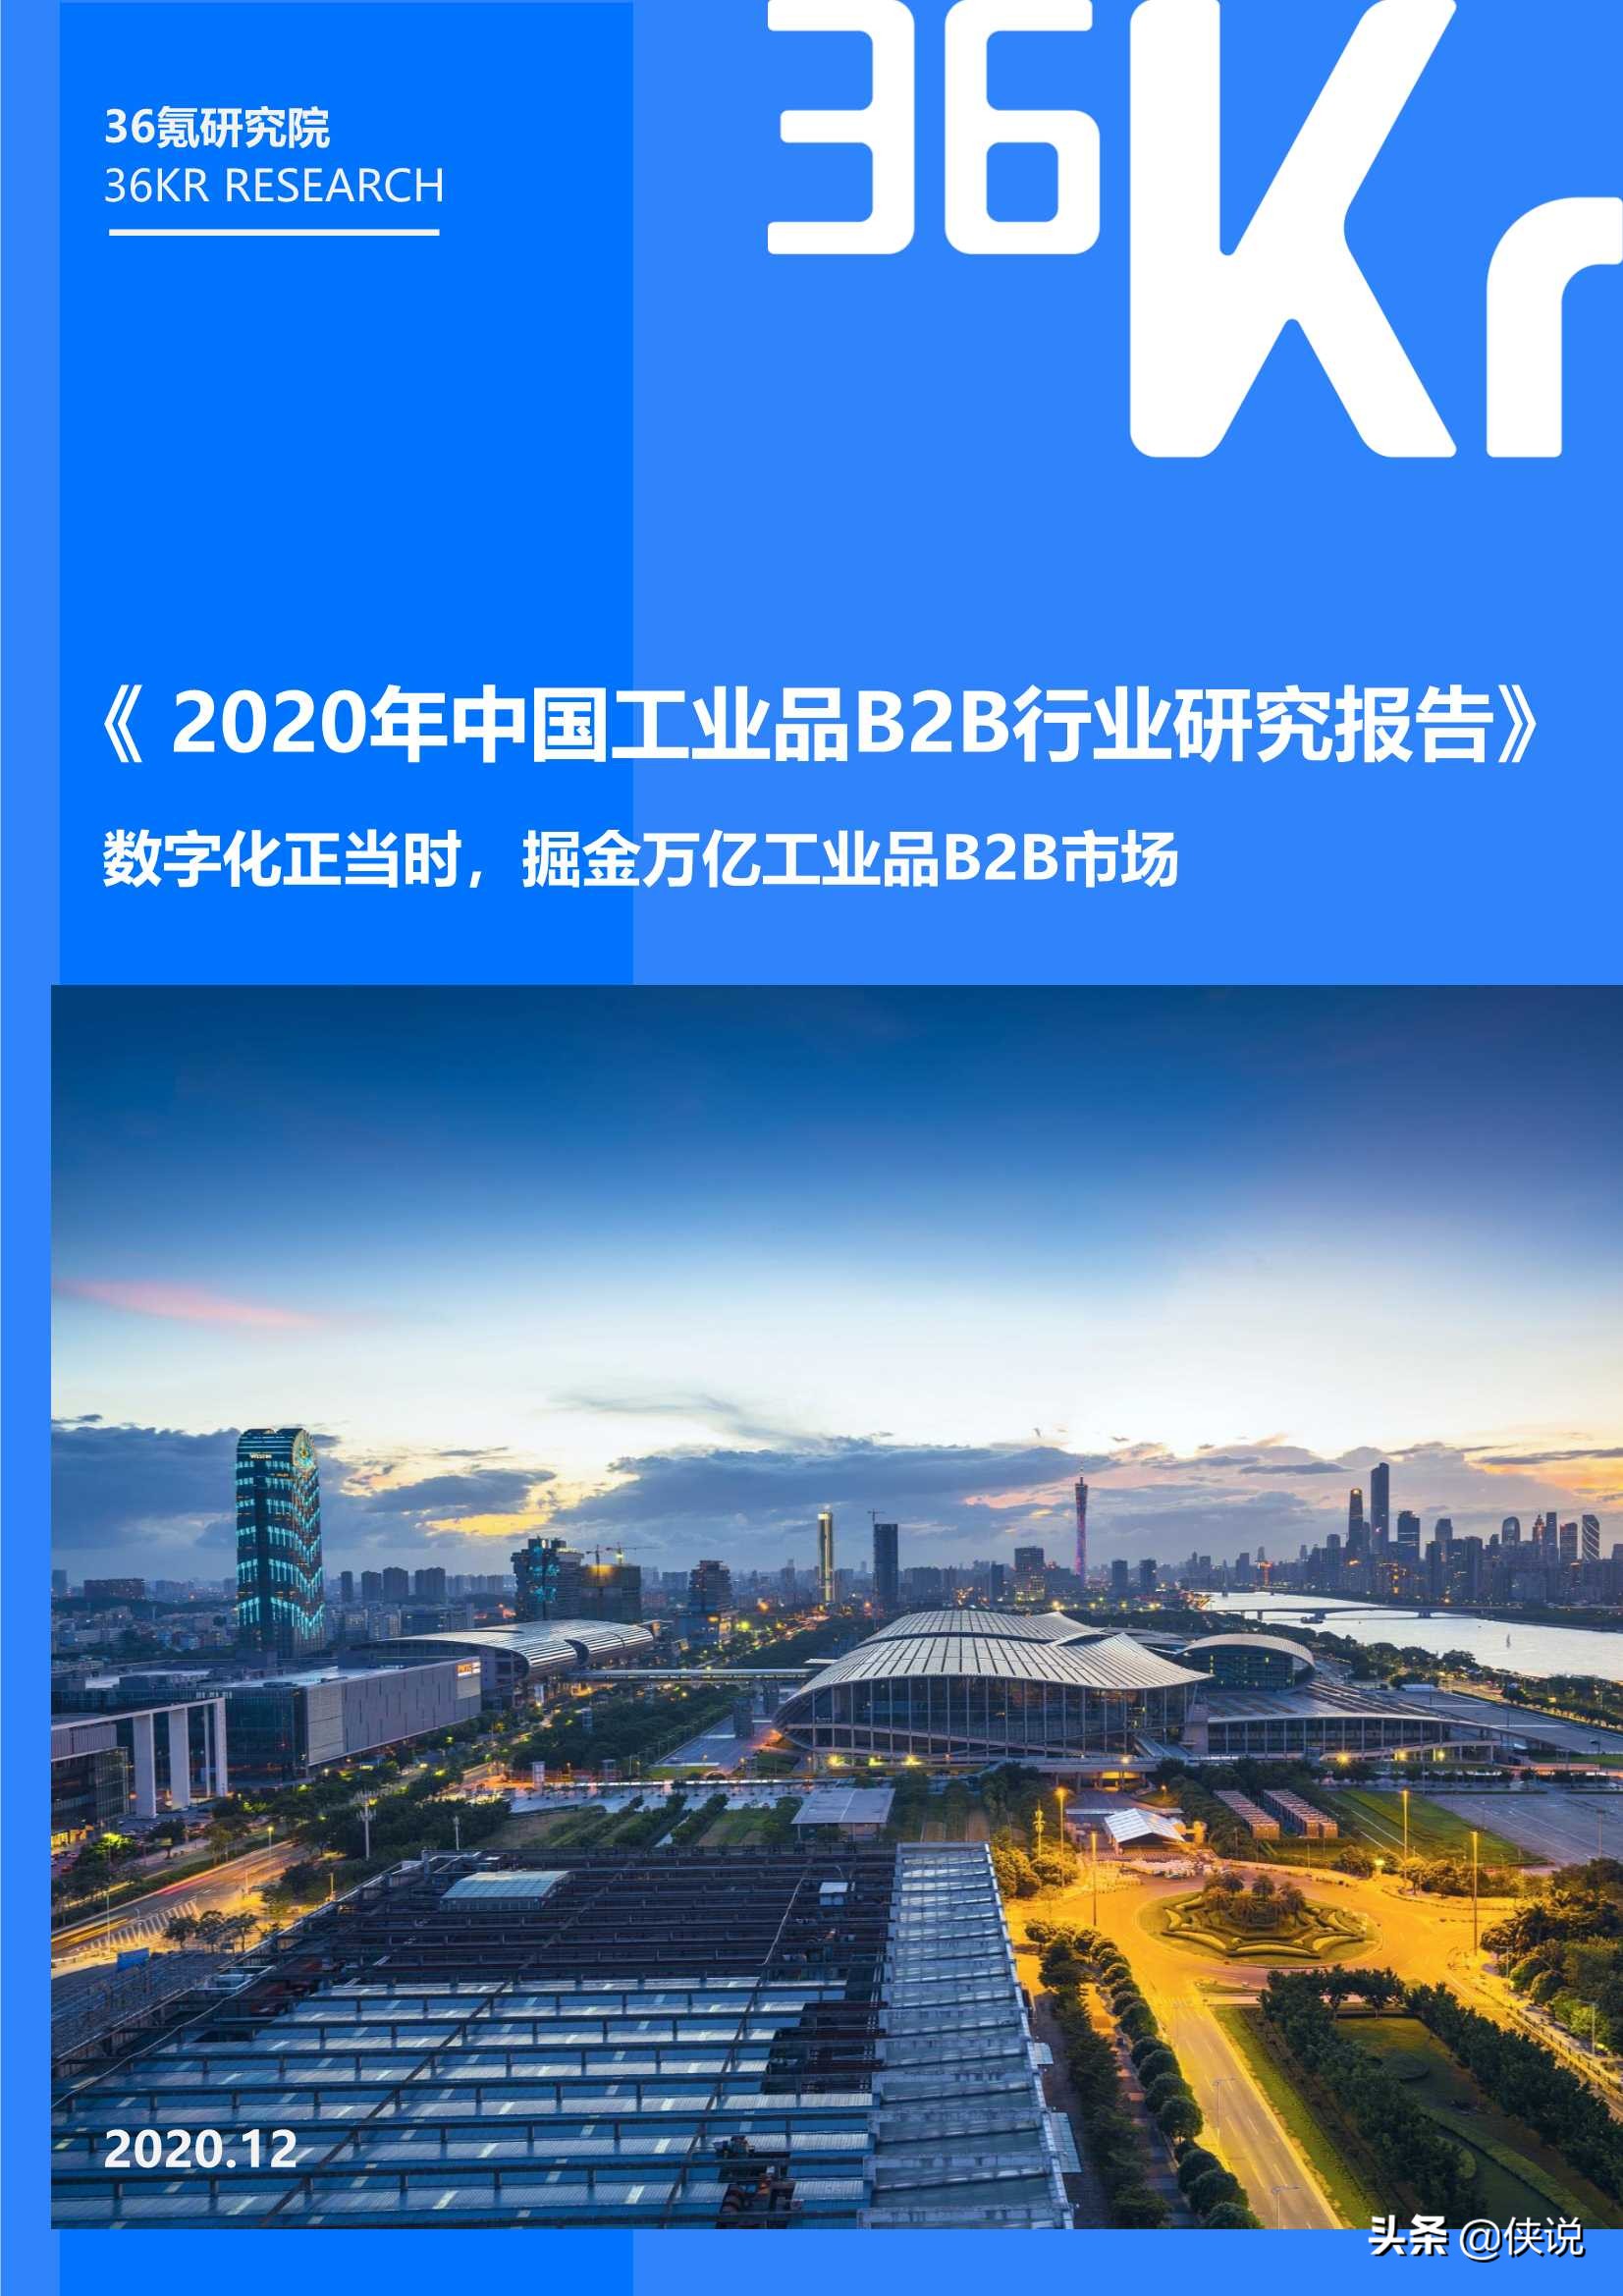 2020年中国工业品B2B行业研究报告（36氪）